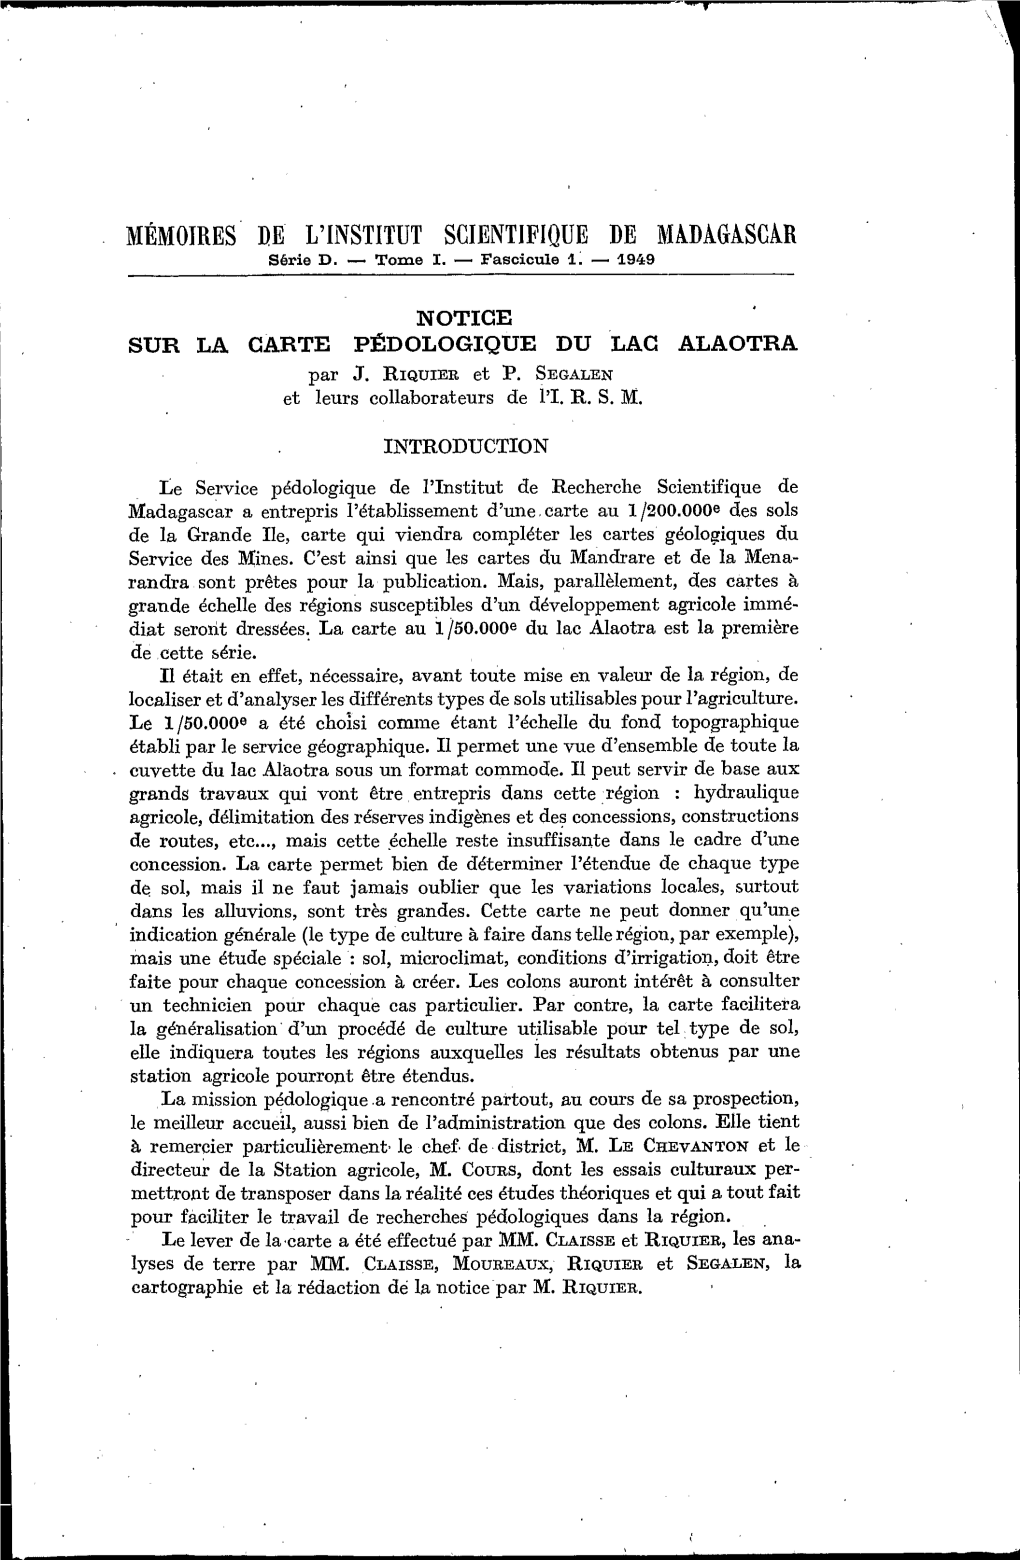 Notice Sur La Carte Pédologique Du Lac Alaotra